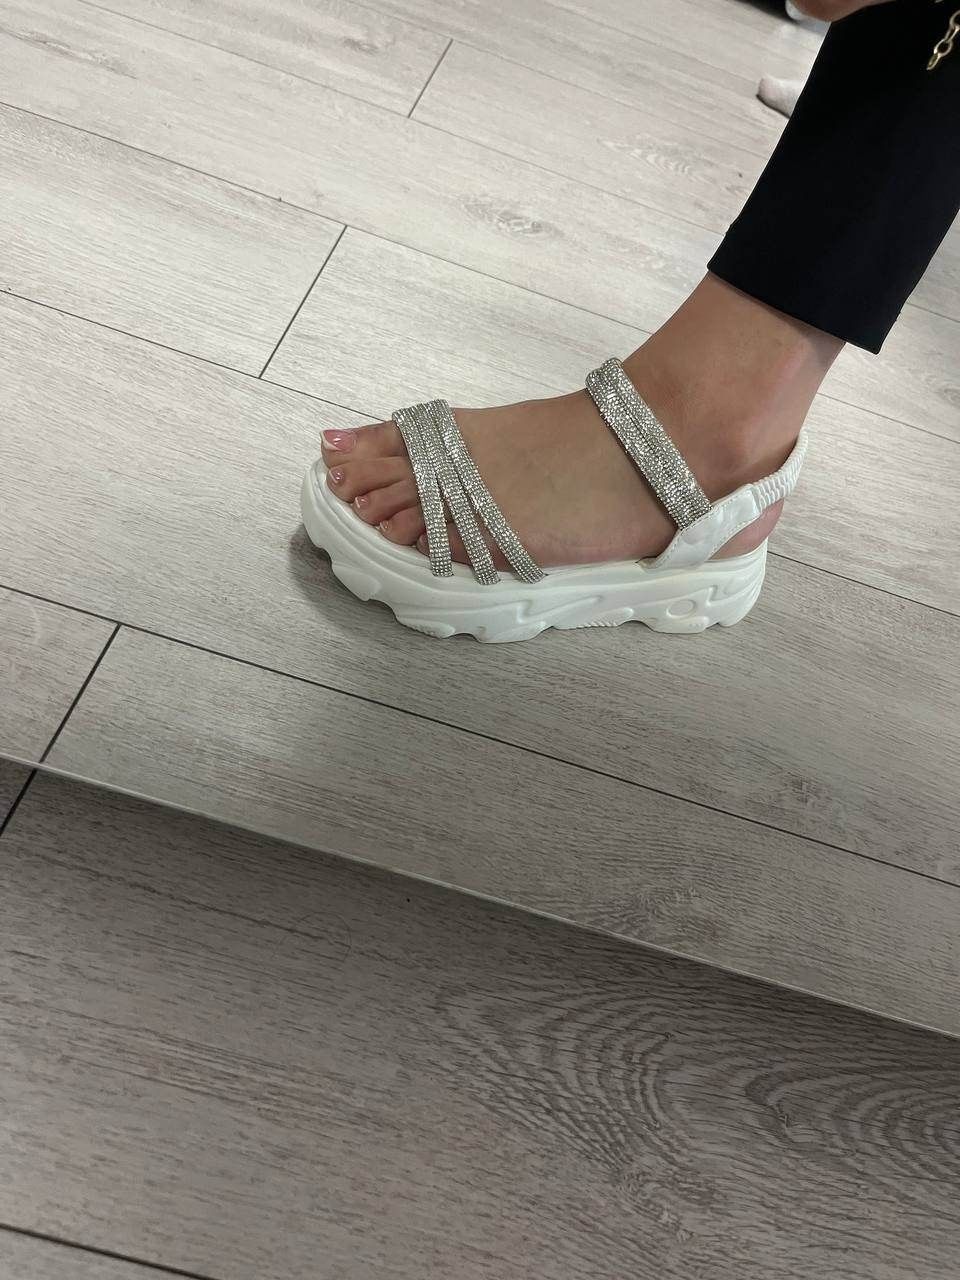 Sandale damă superbe.